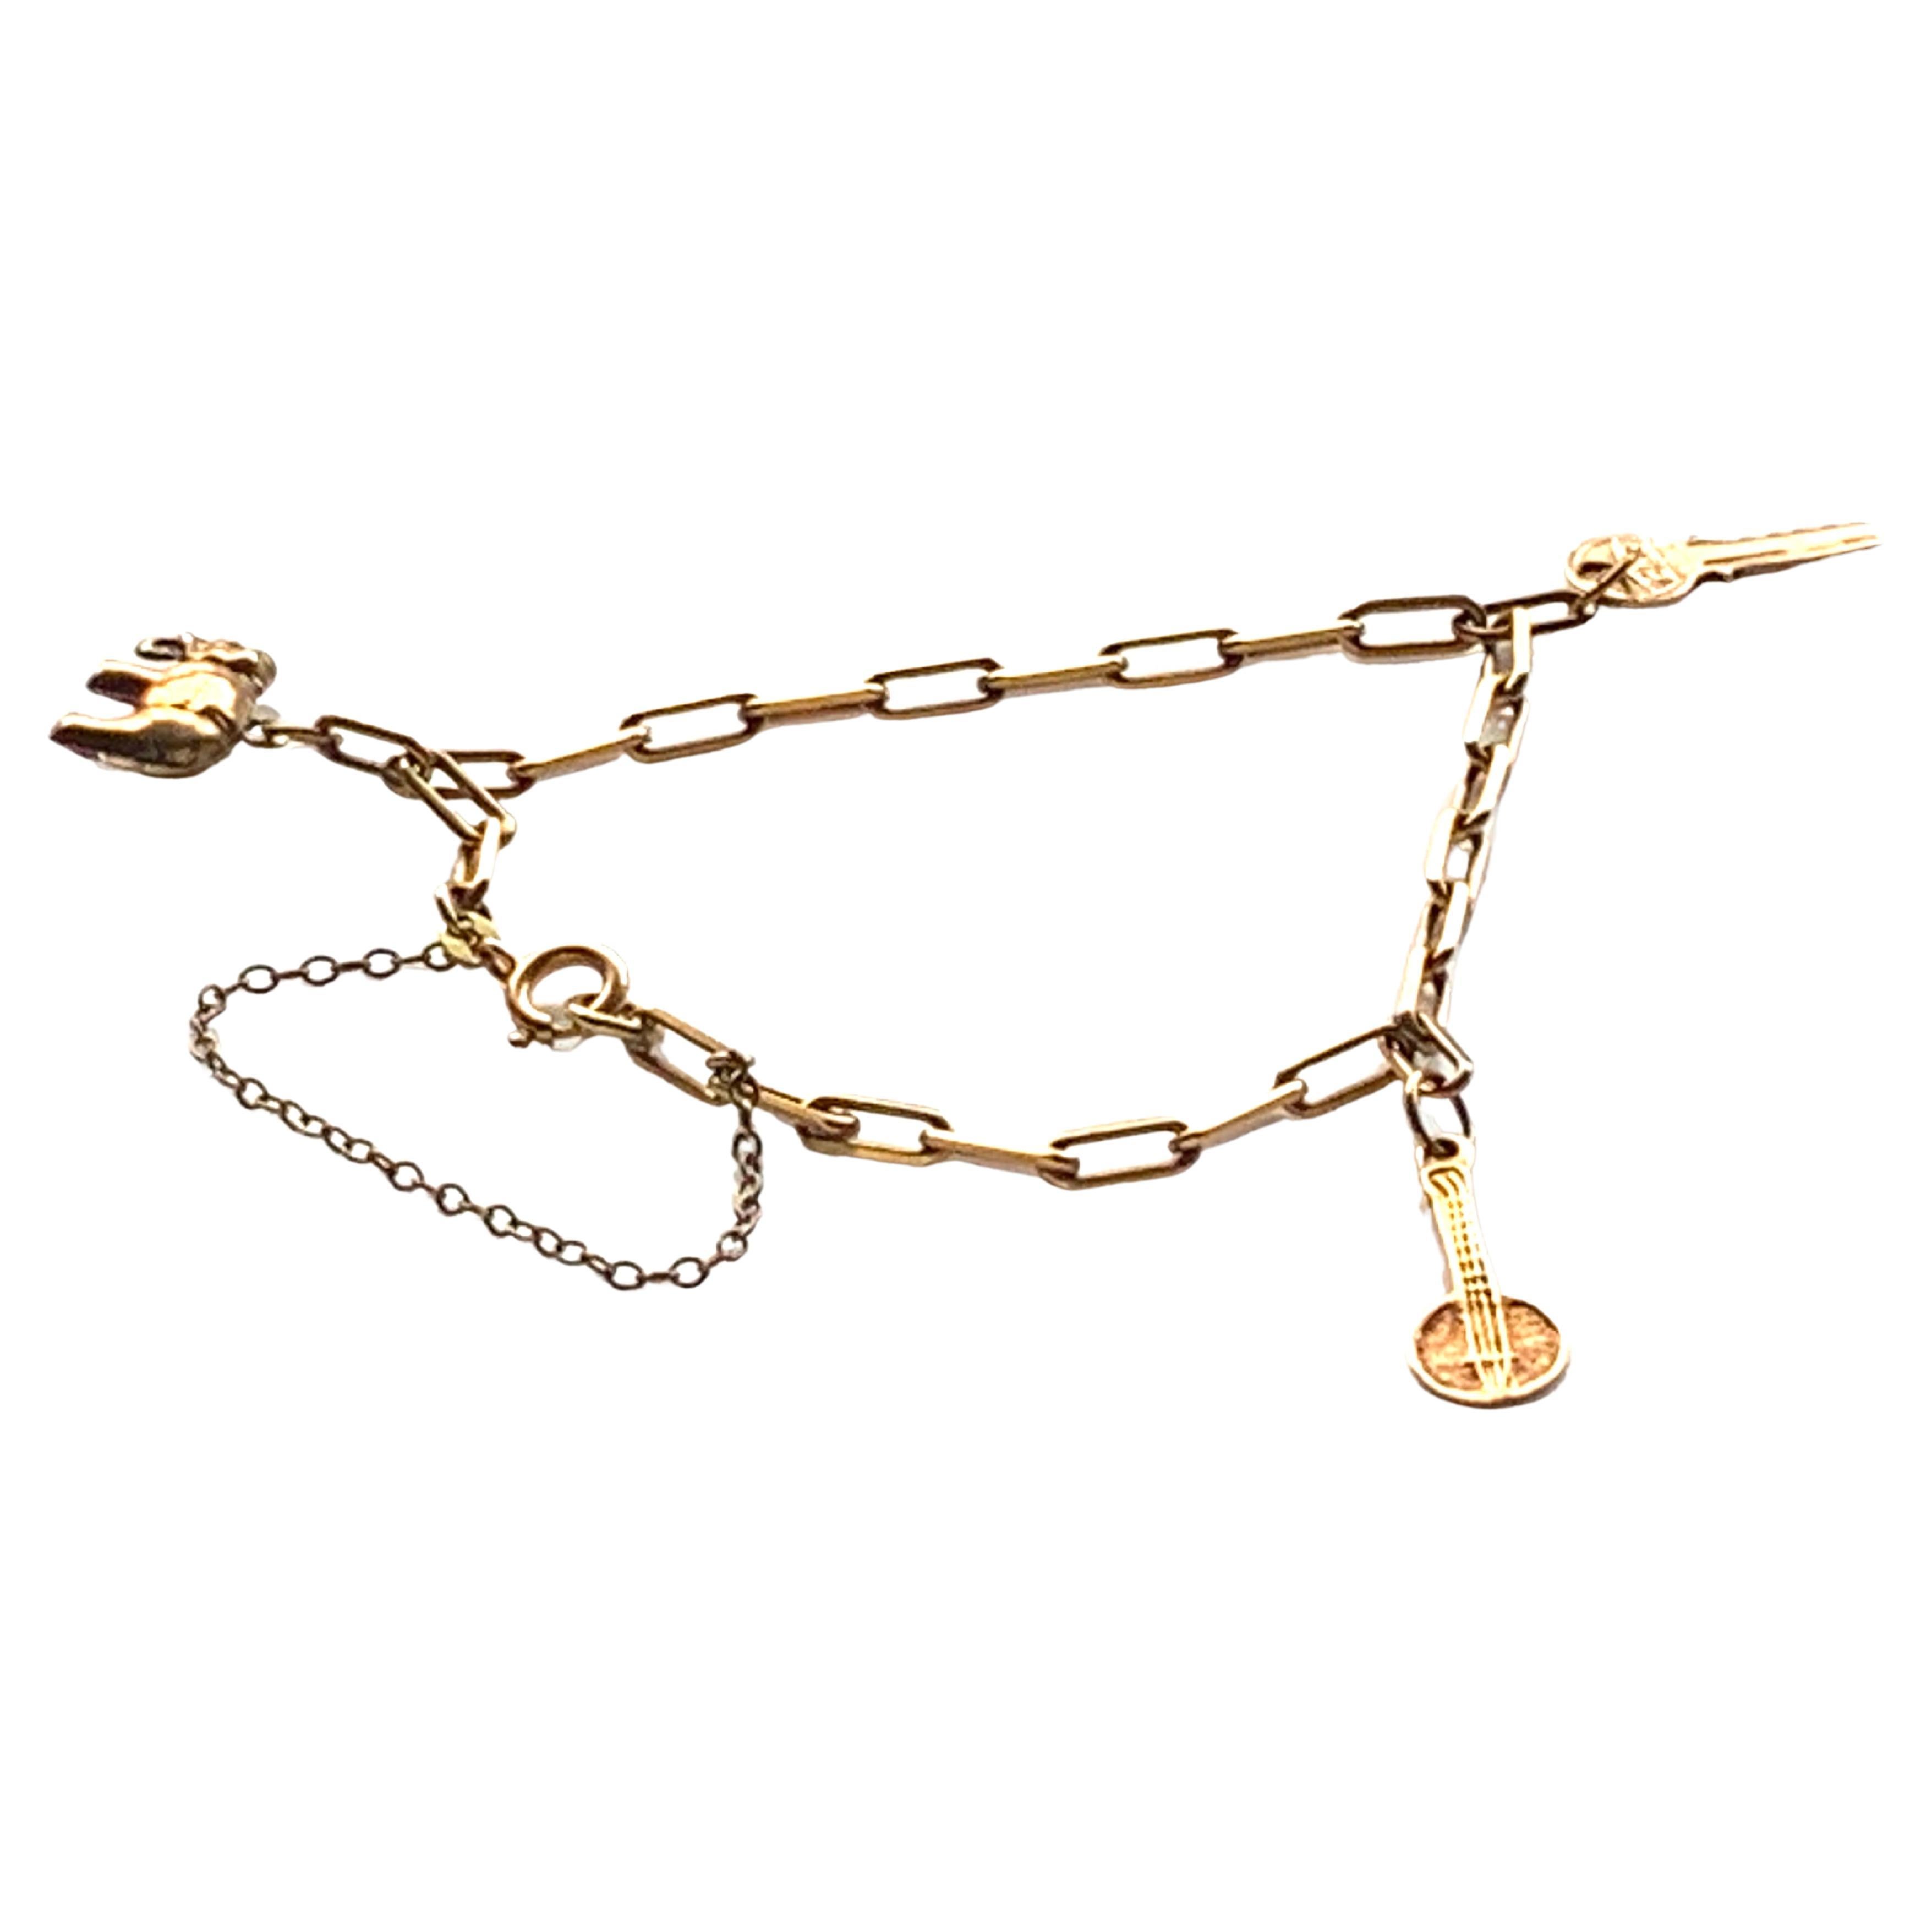 Antique 9ct Gold Charm Bracelet